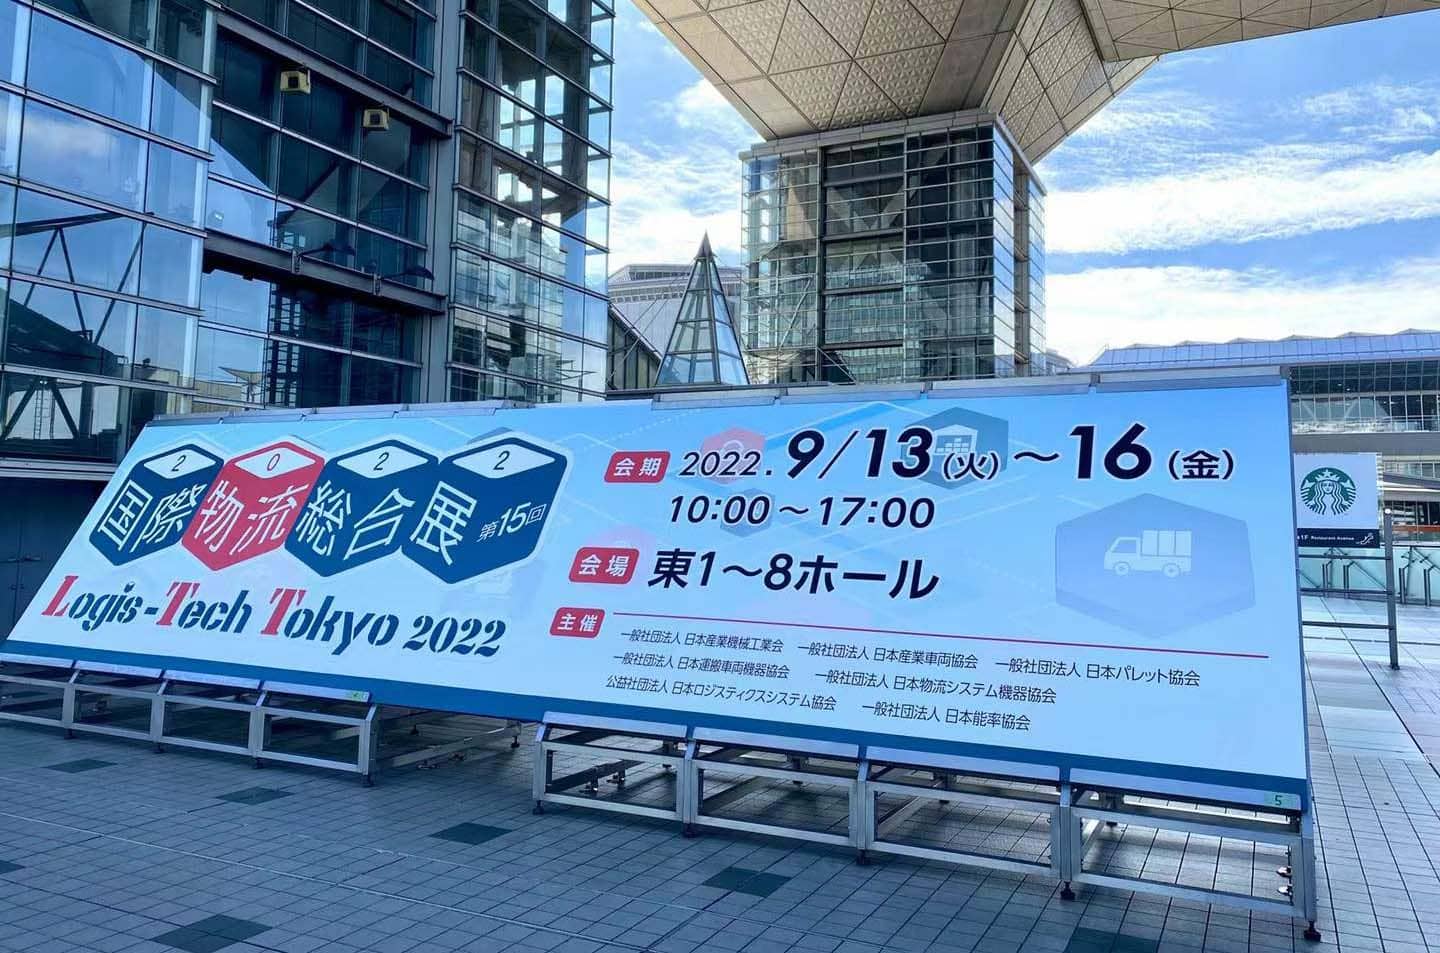 MIMA تحضر The Logistics World محور الابتكار 2022-LTT في طوكيو